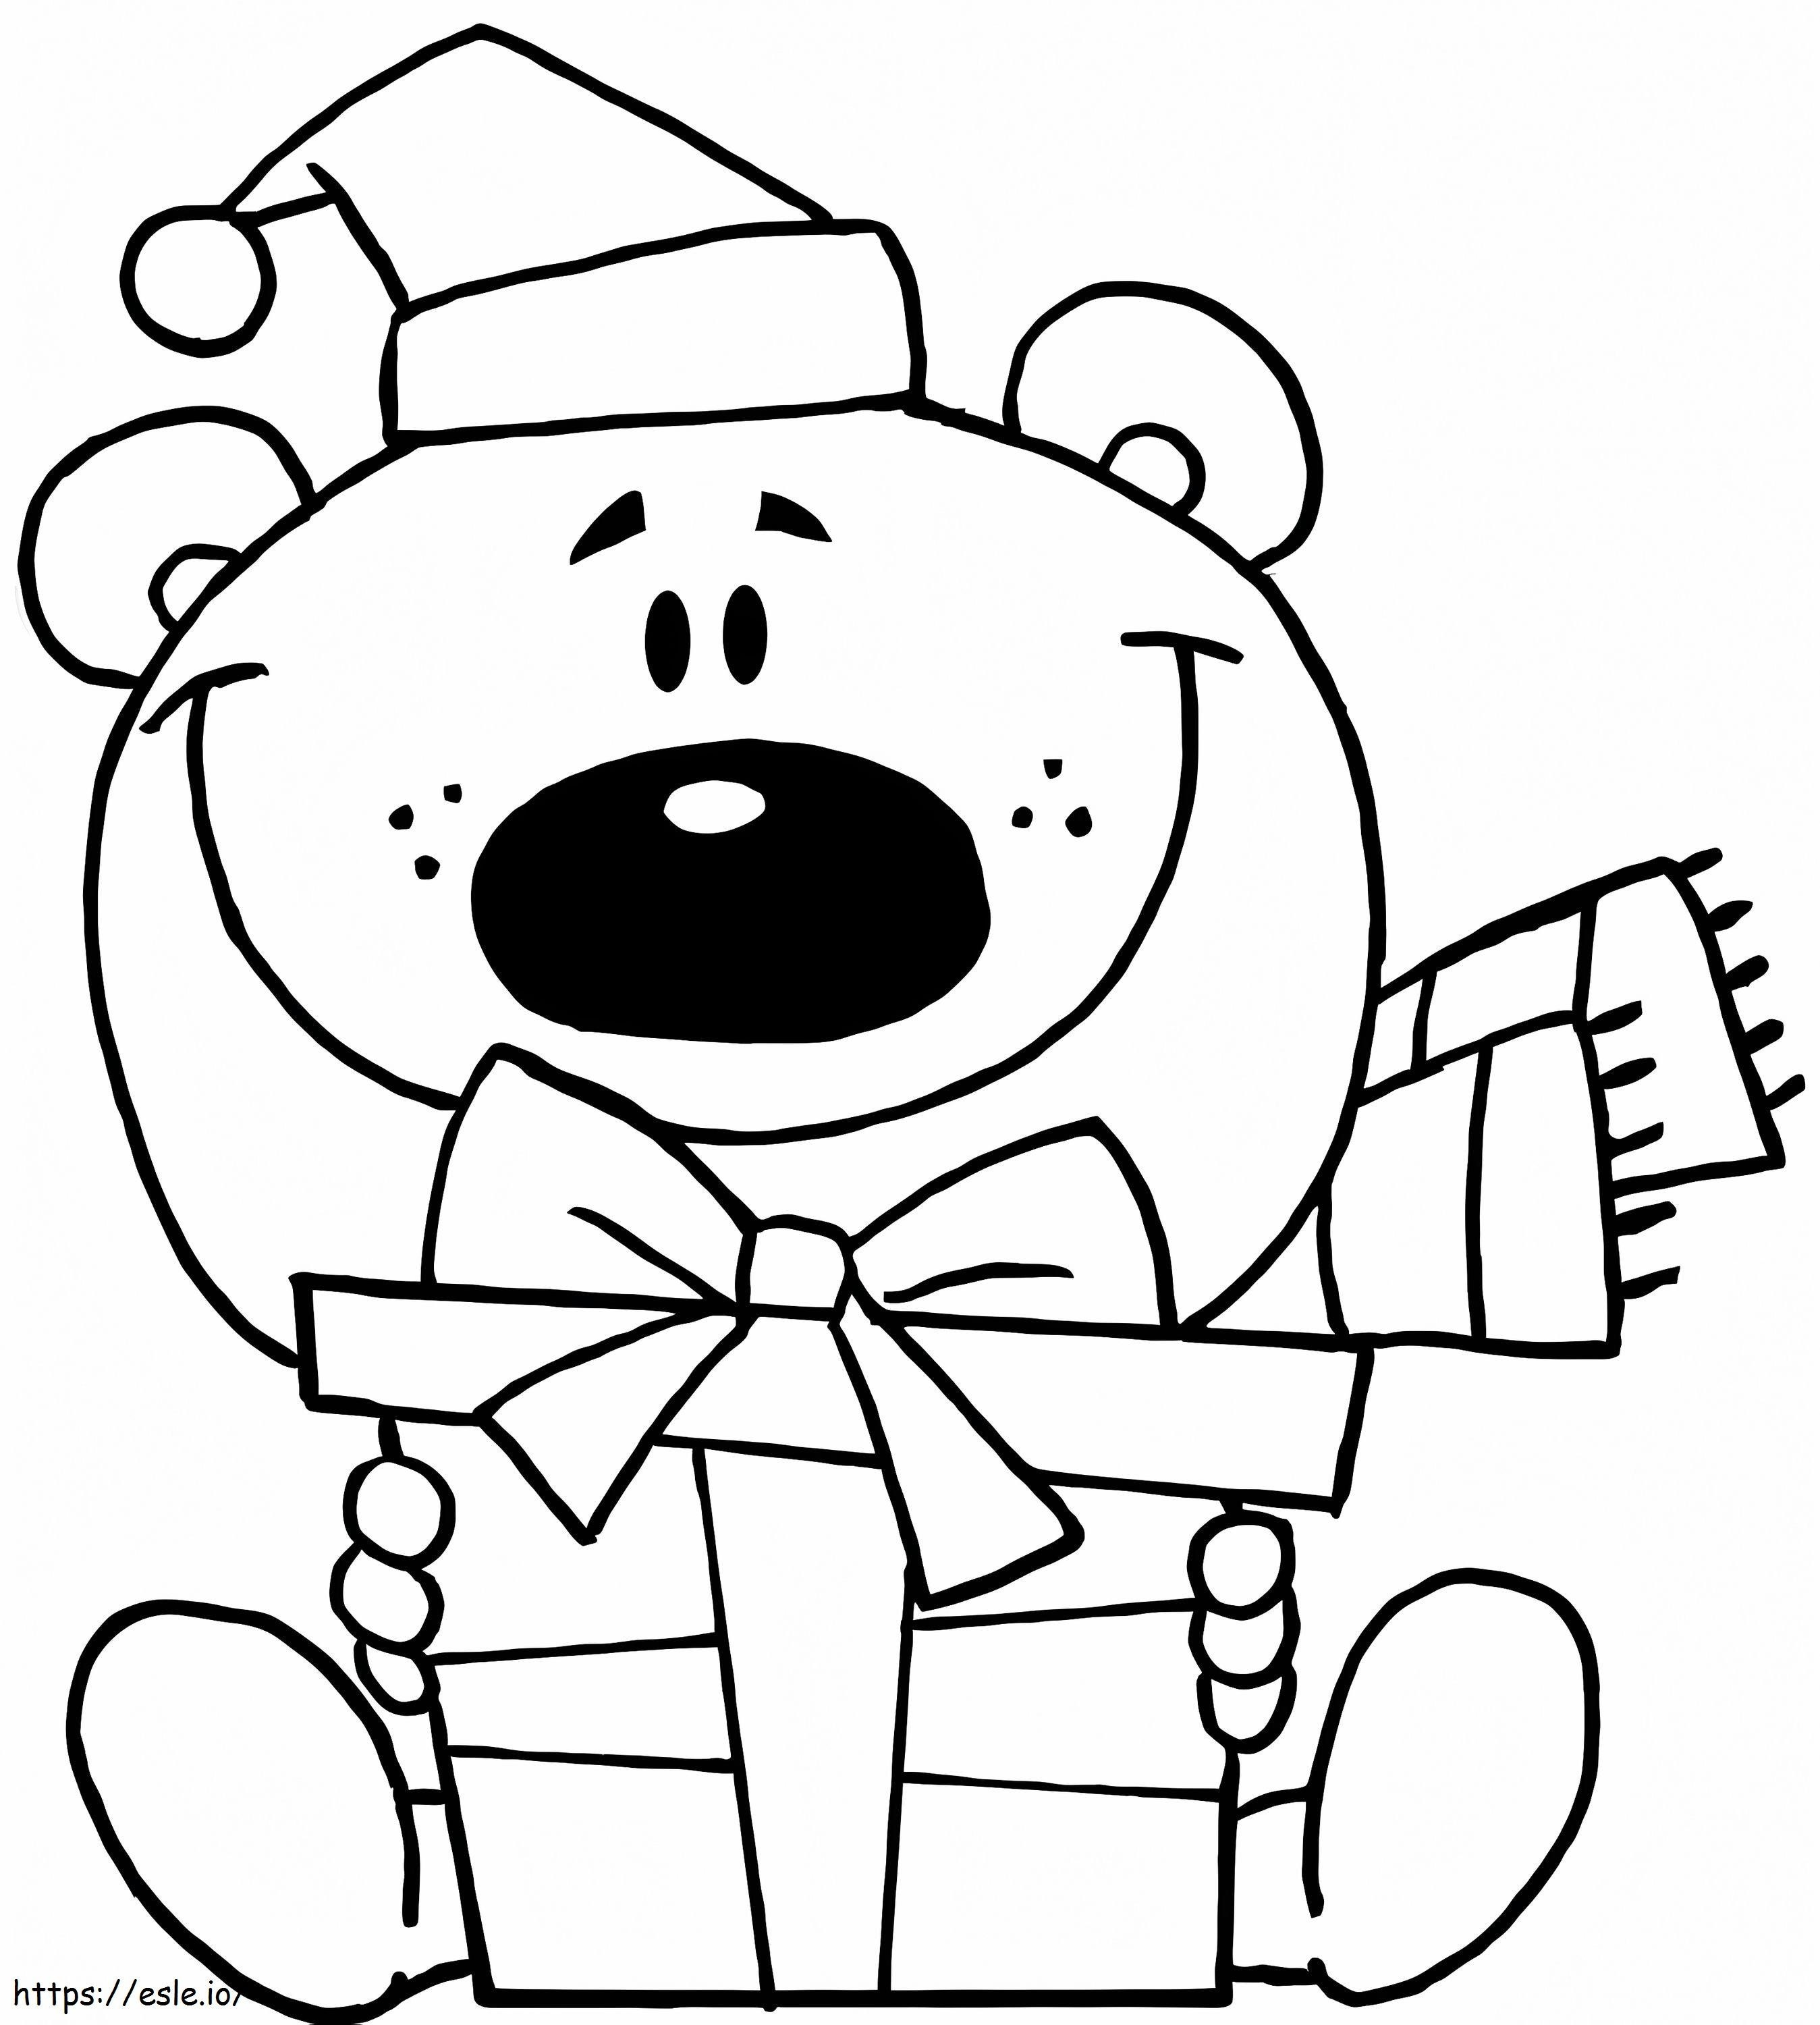 Teddybär und Geschenk ausmalbilder